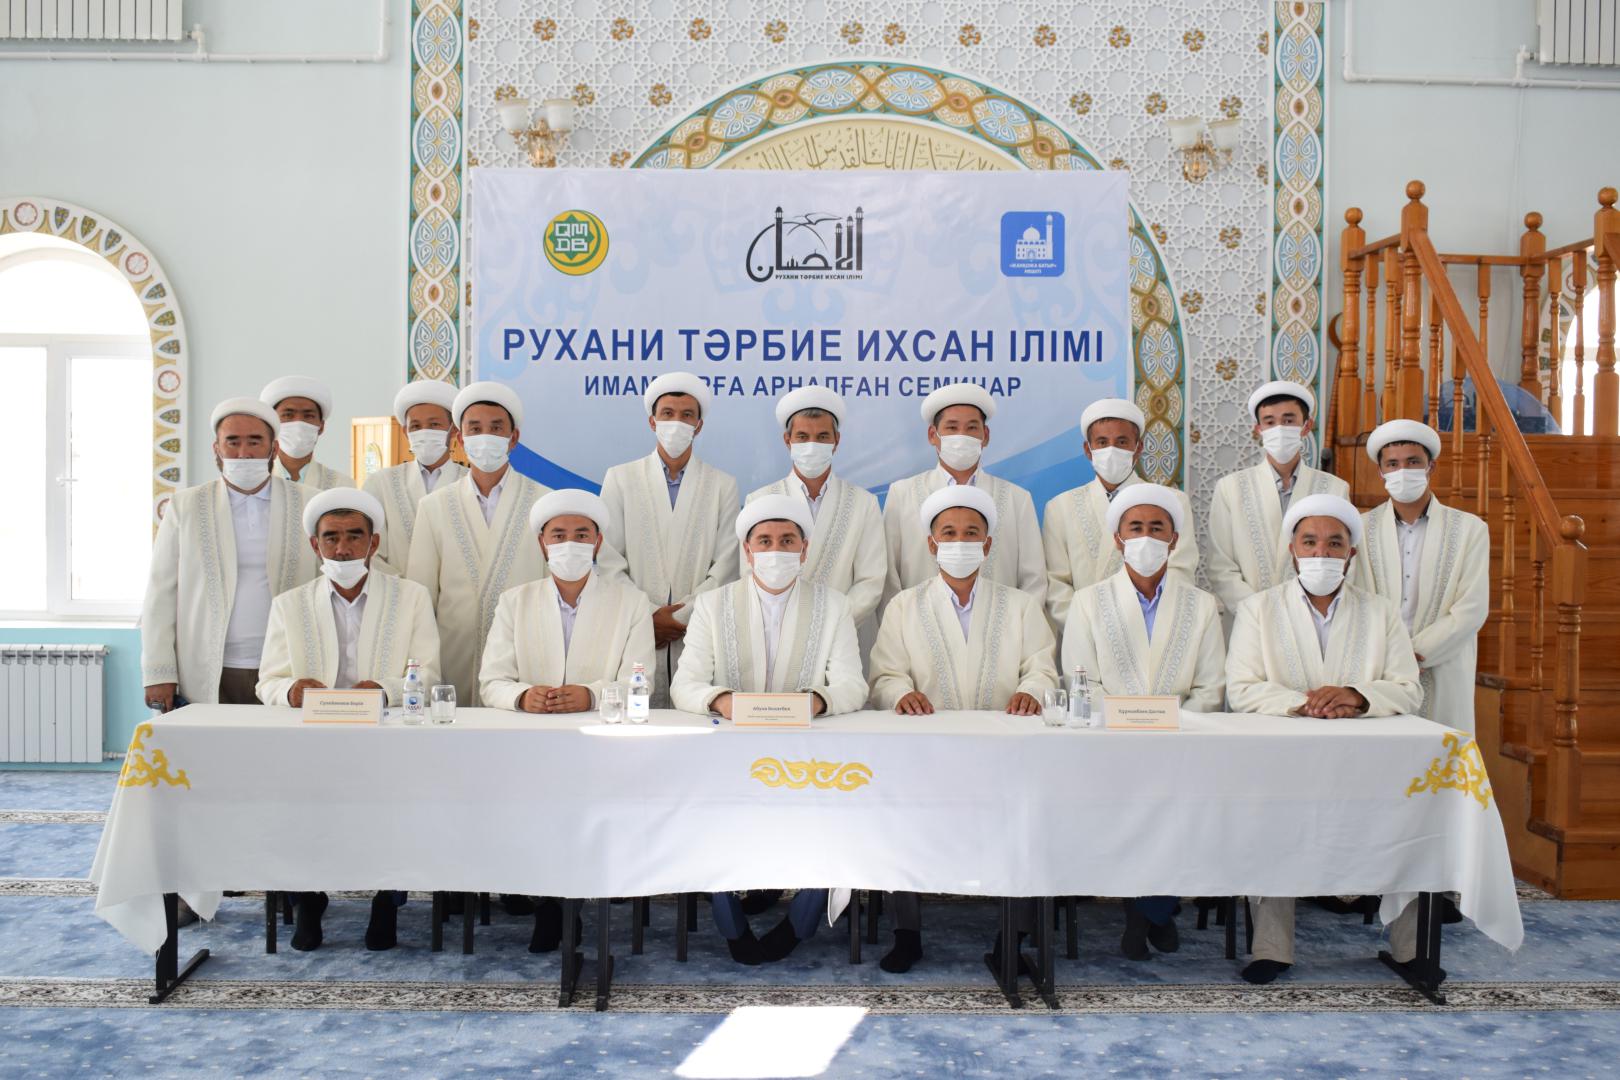 Қызылорда: Қазалы имамдары семинарға қатысты